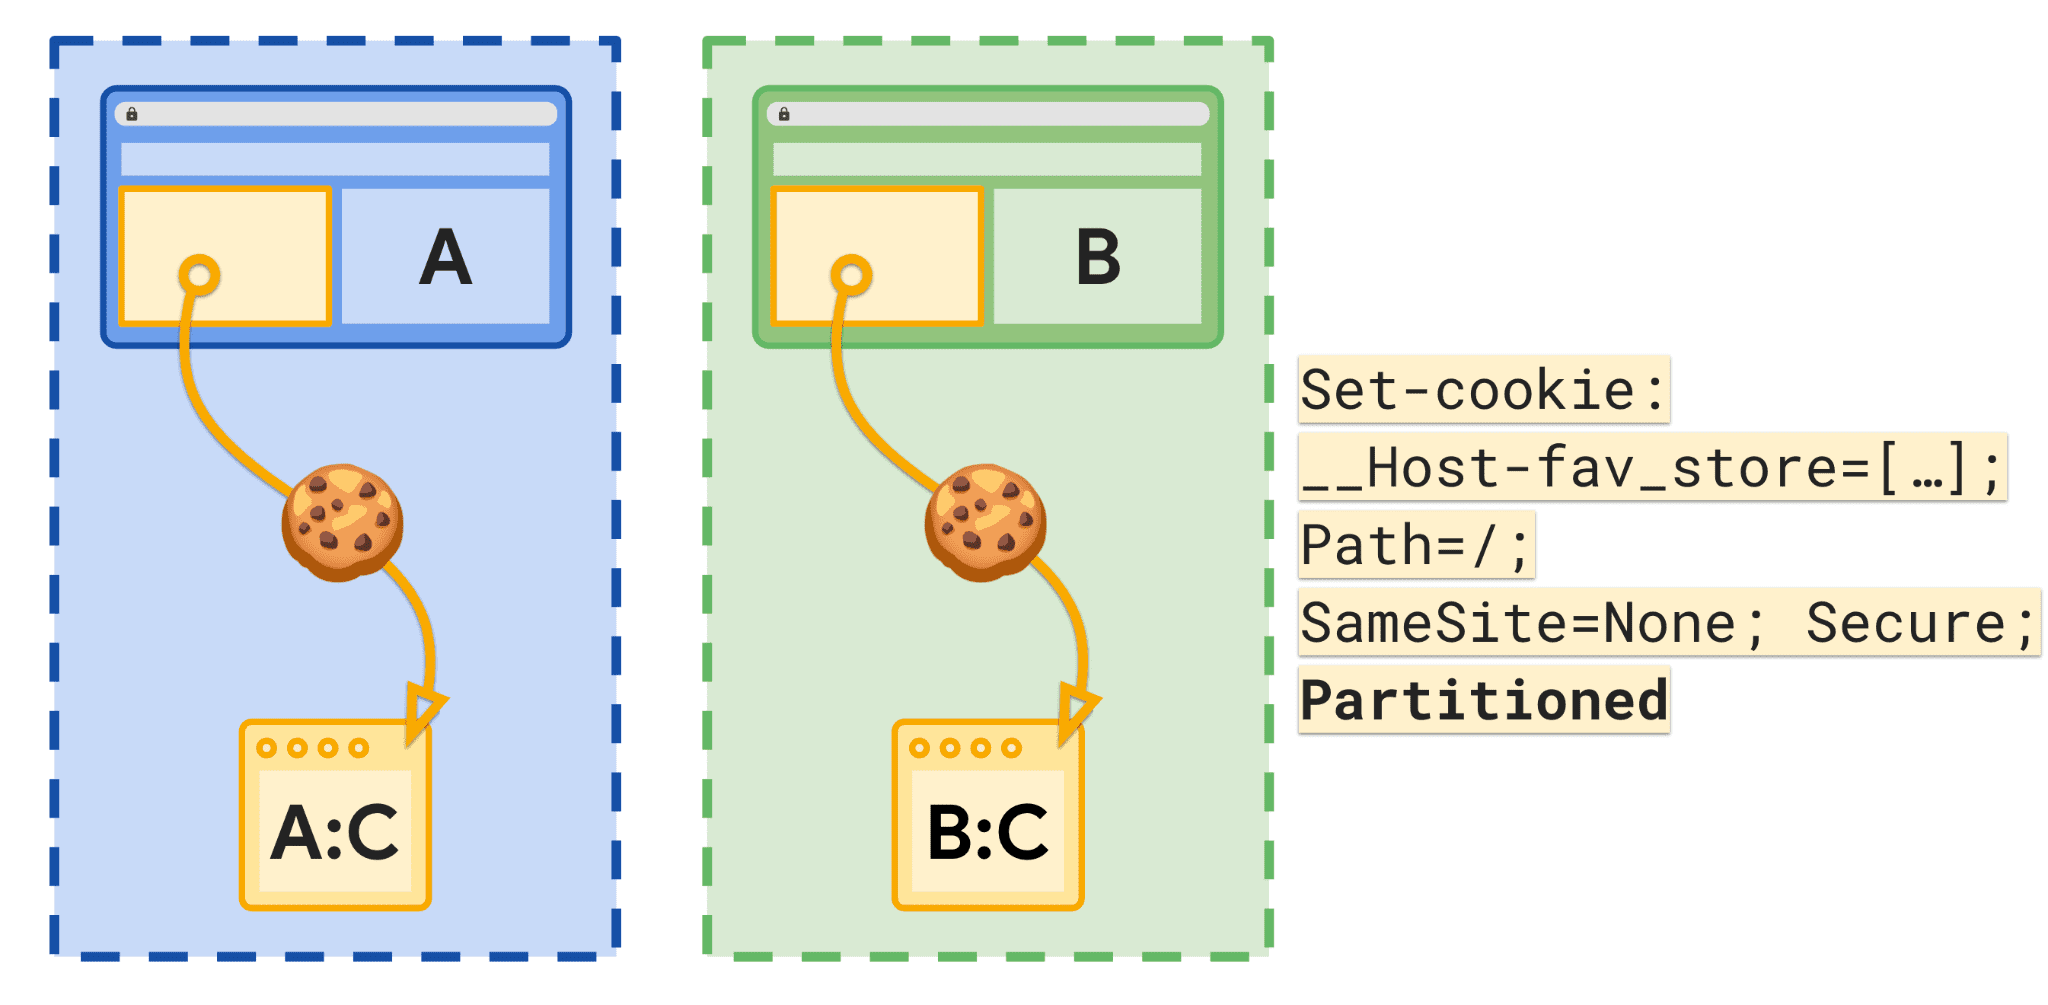 مخطّط بياني يعرض المواقع الإلكترونية ومساحة التخزين المقسَّمة باستخدام ملفات تعريف الارتباط